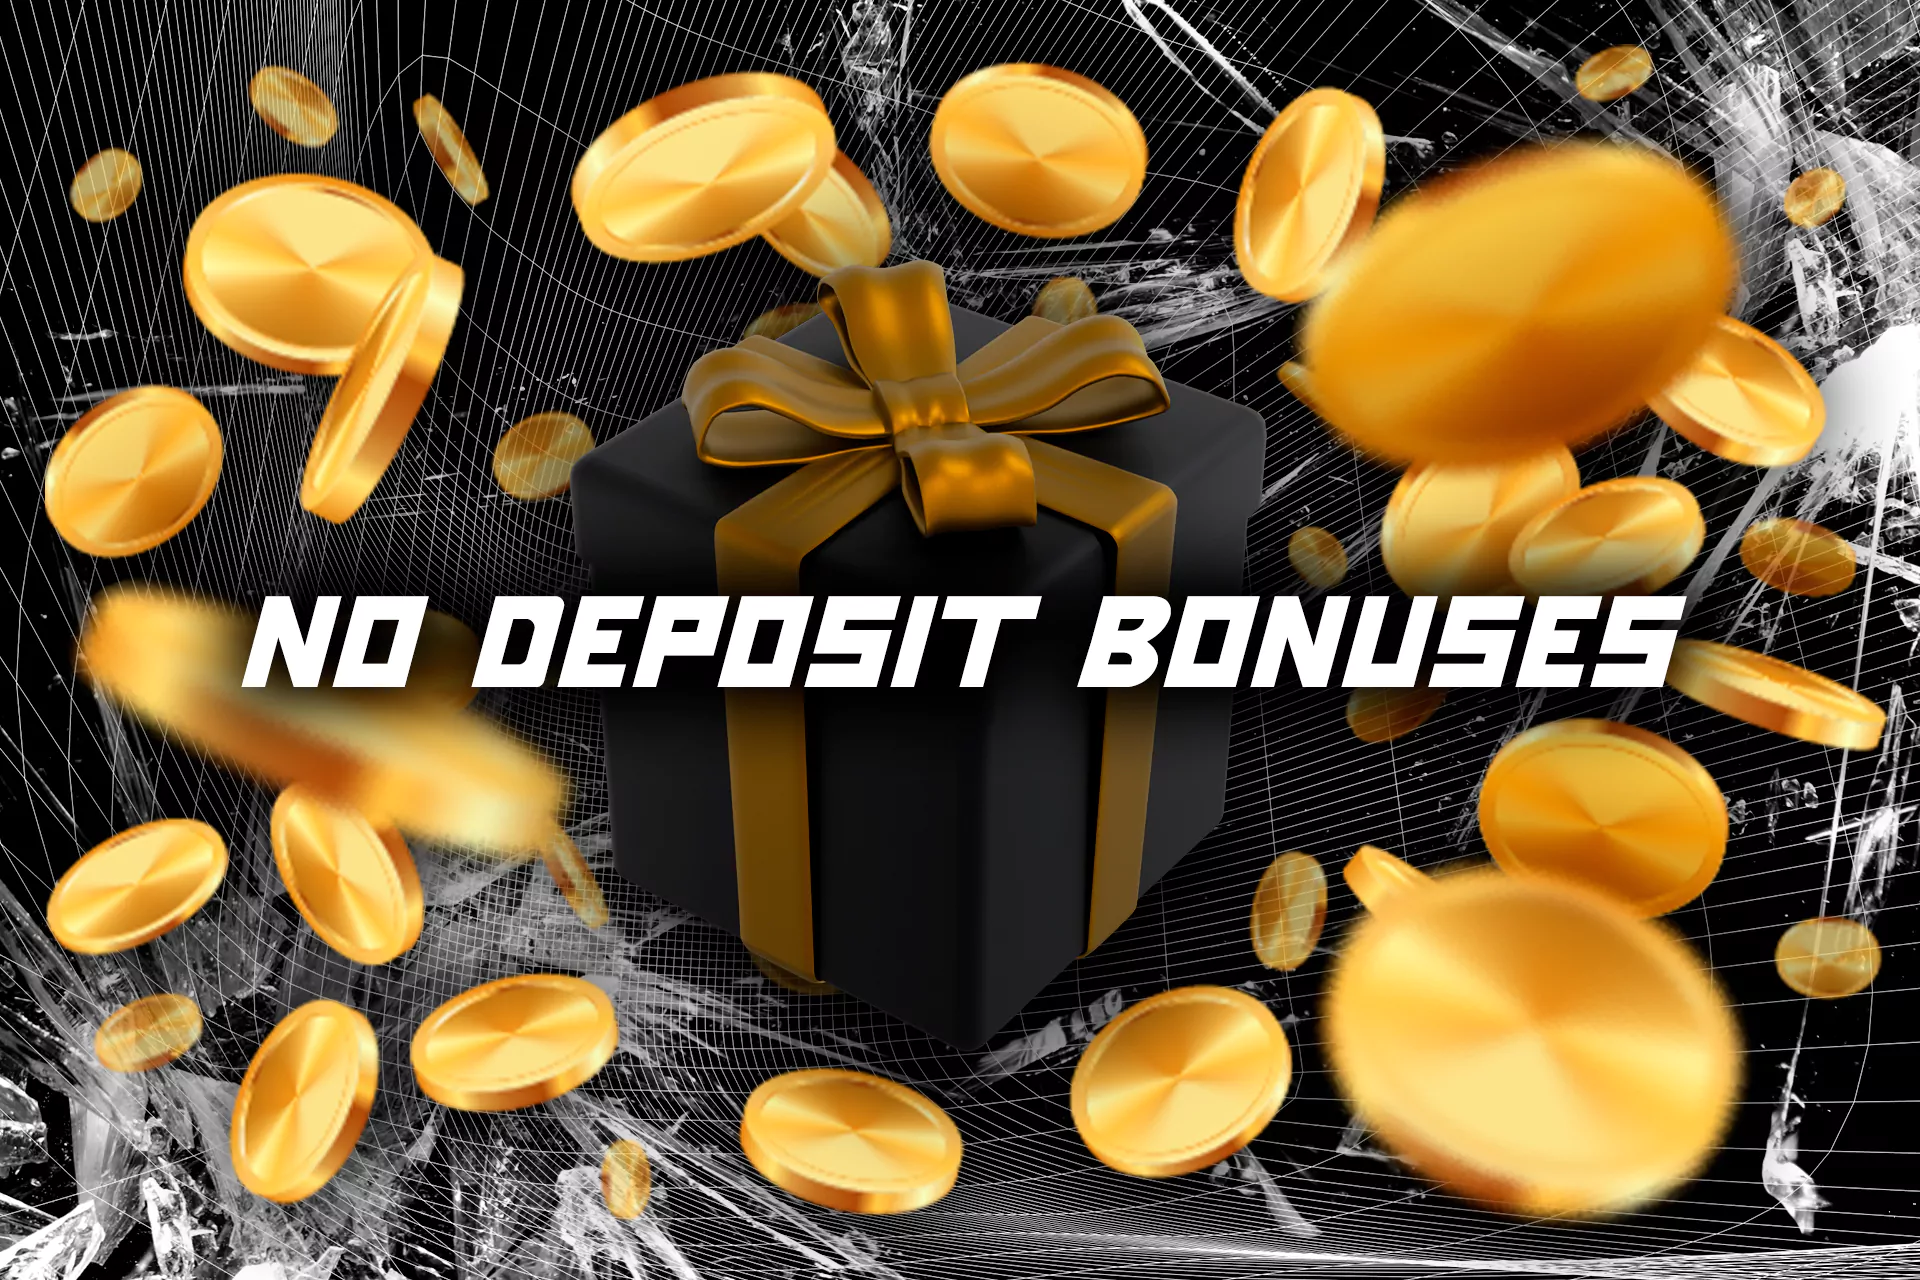 A short recap of the no deposit bonuses.